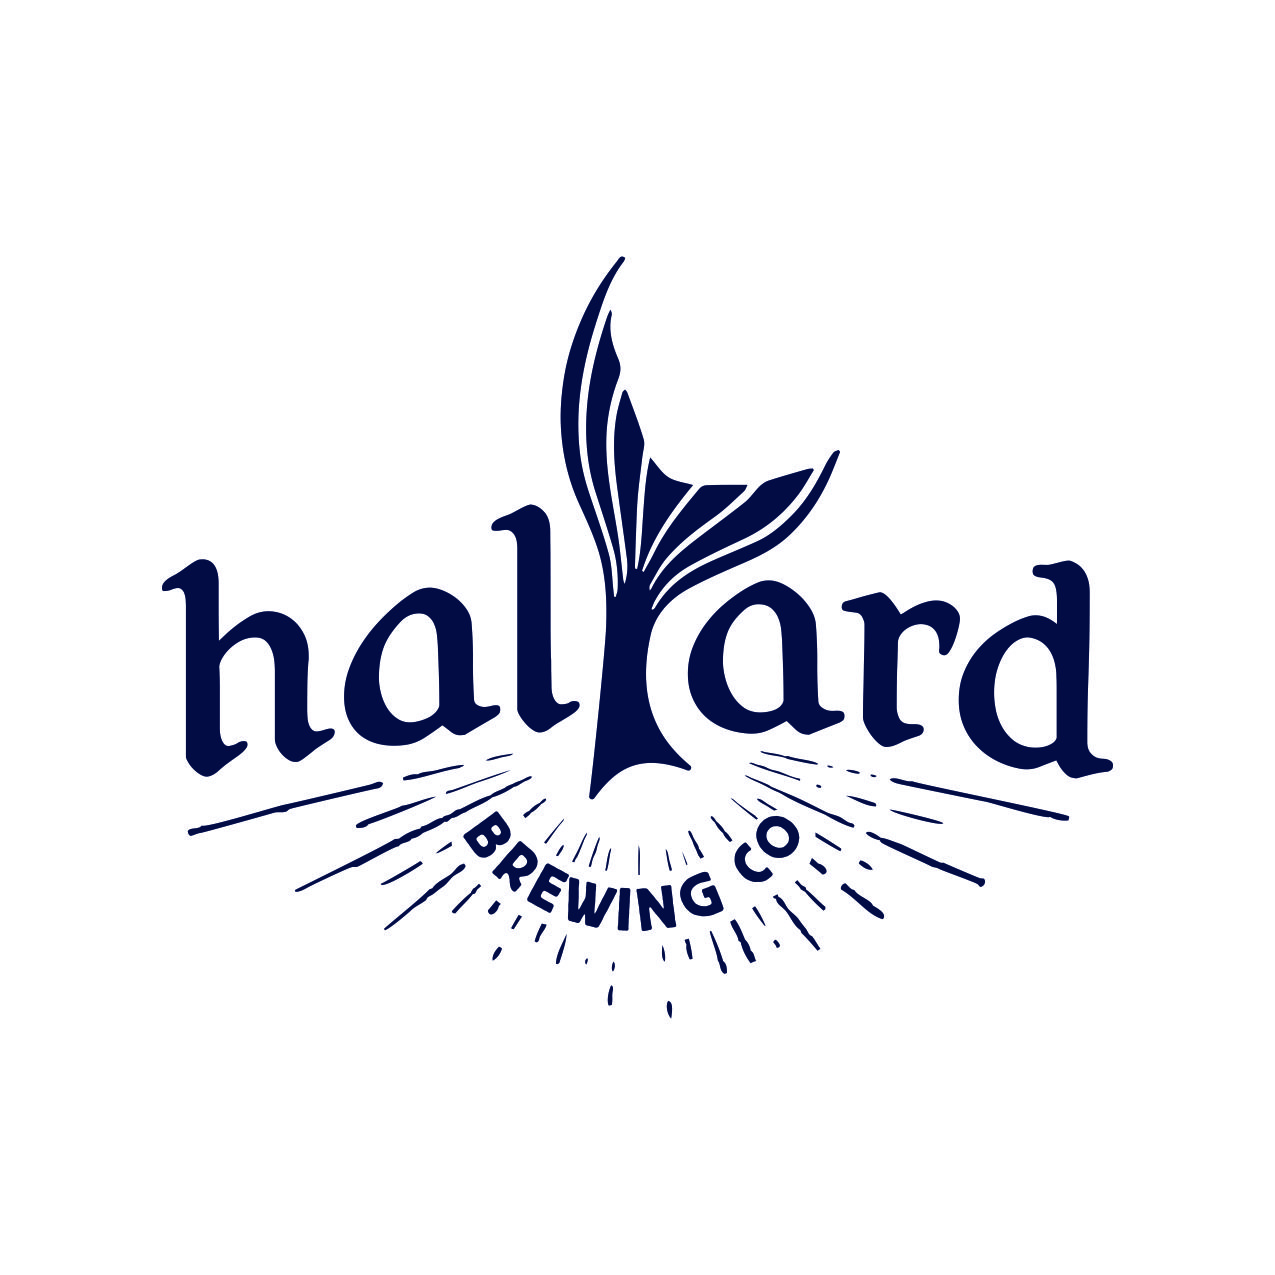 Halyard